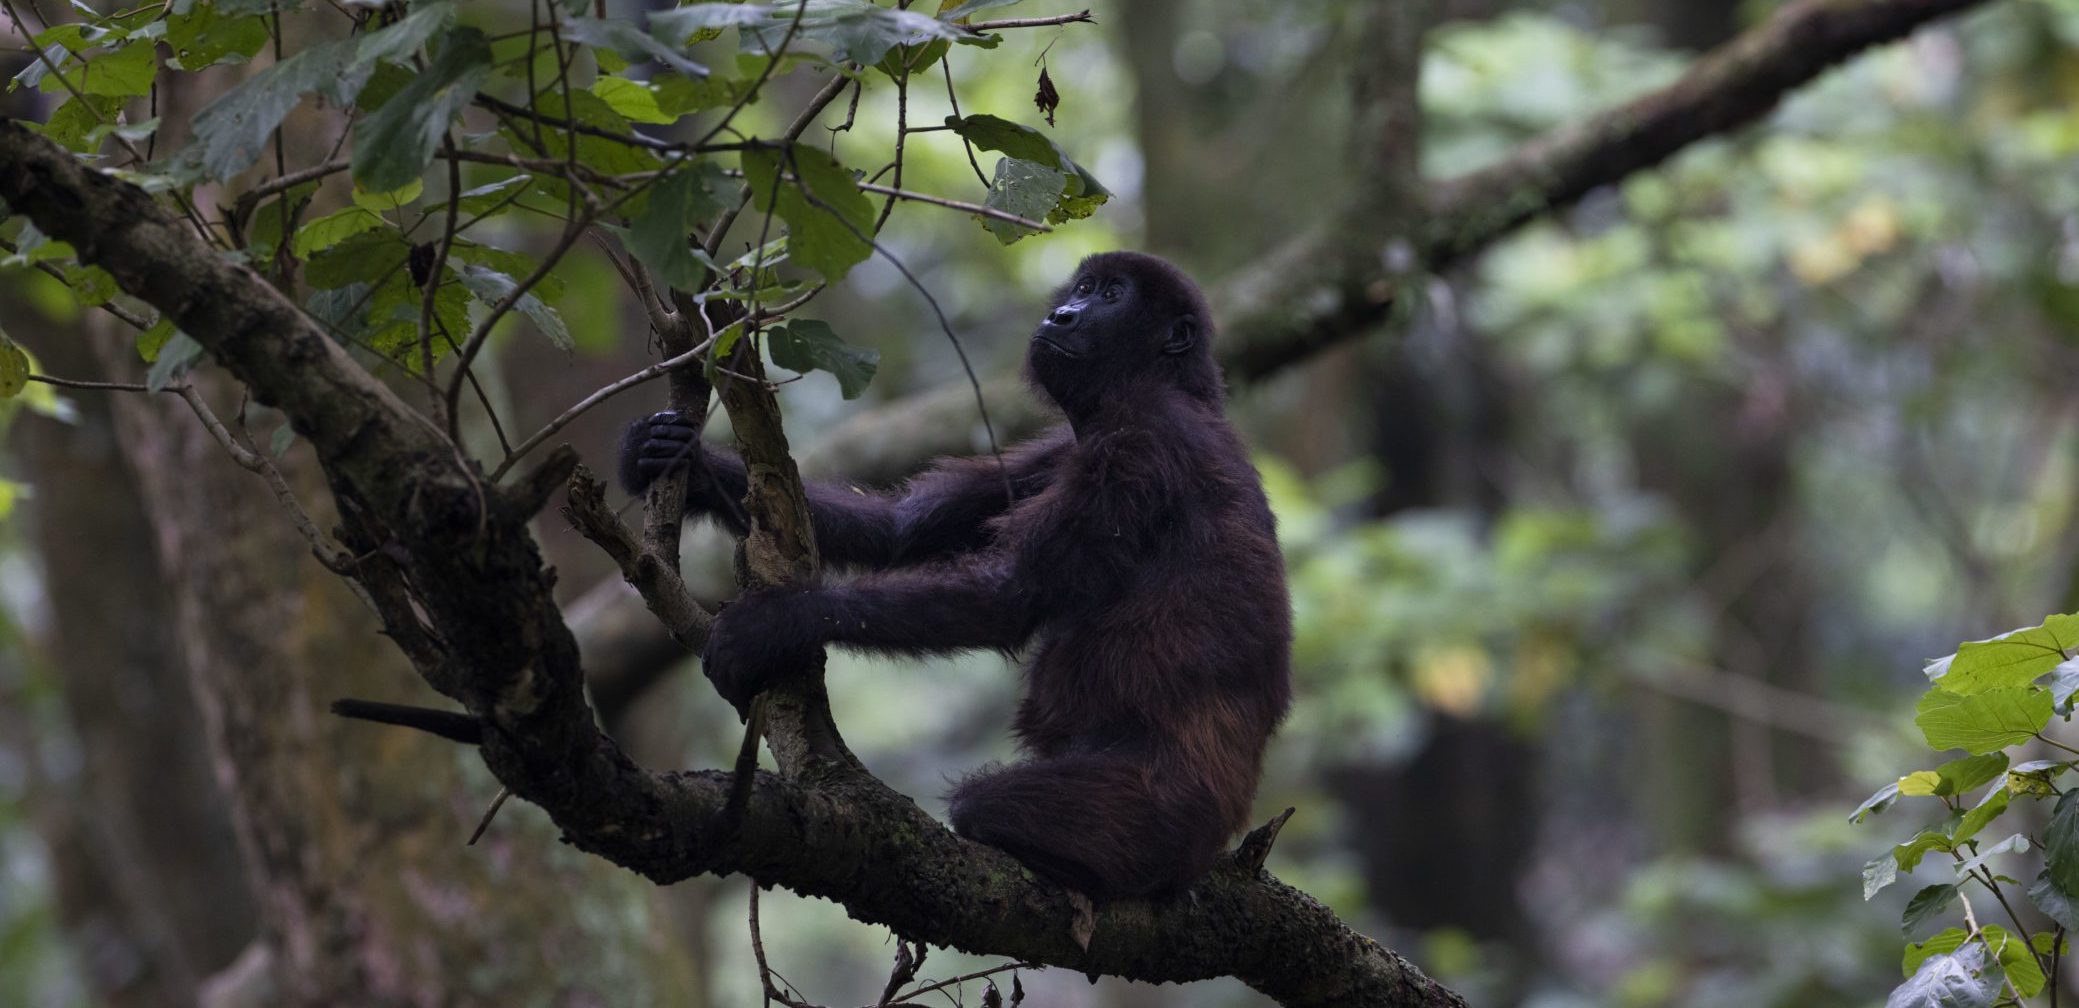 An image of an orphaned mountain gorilla